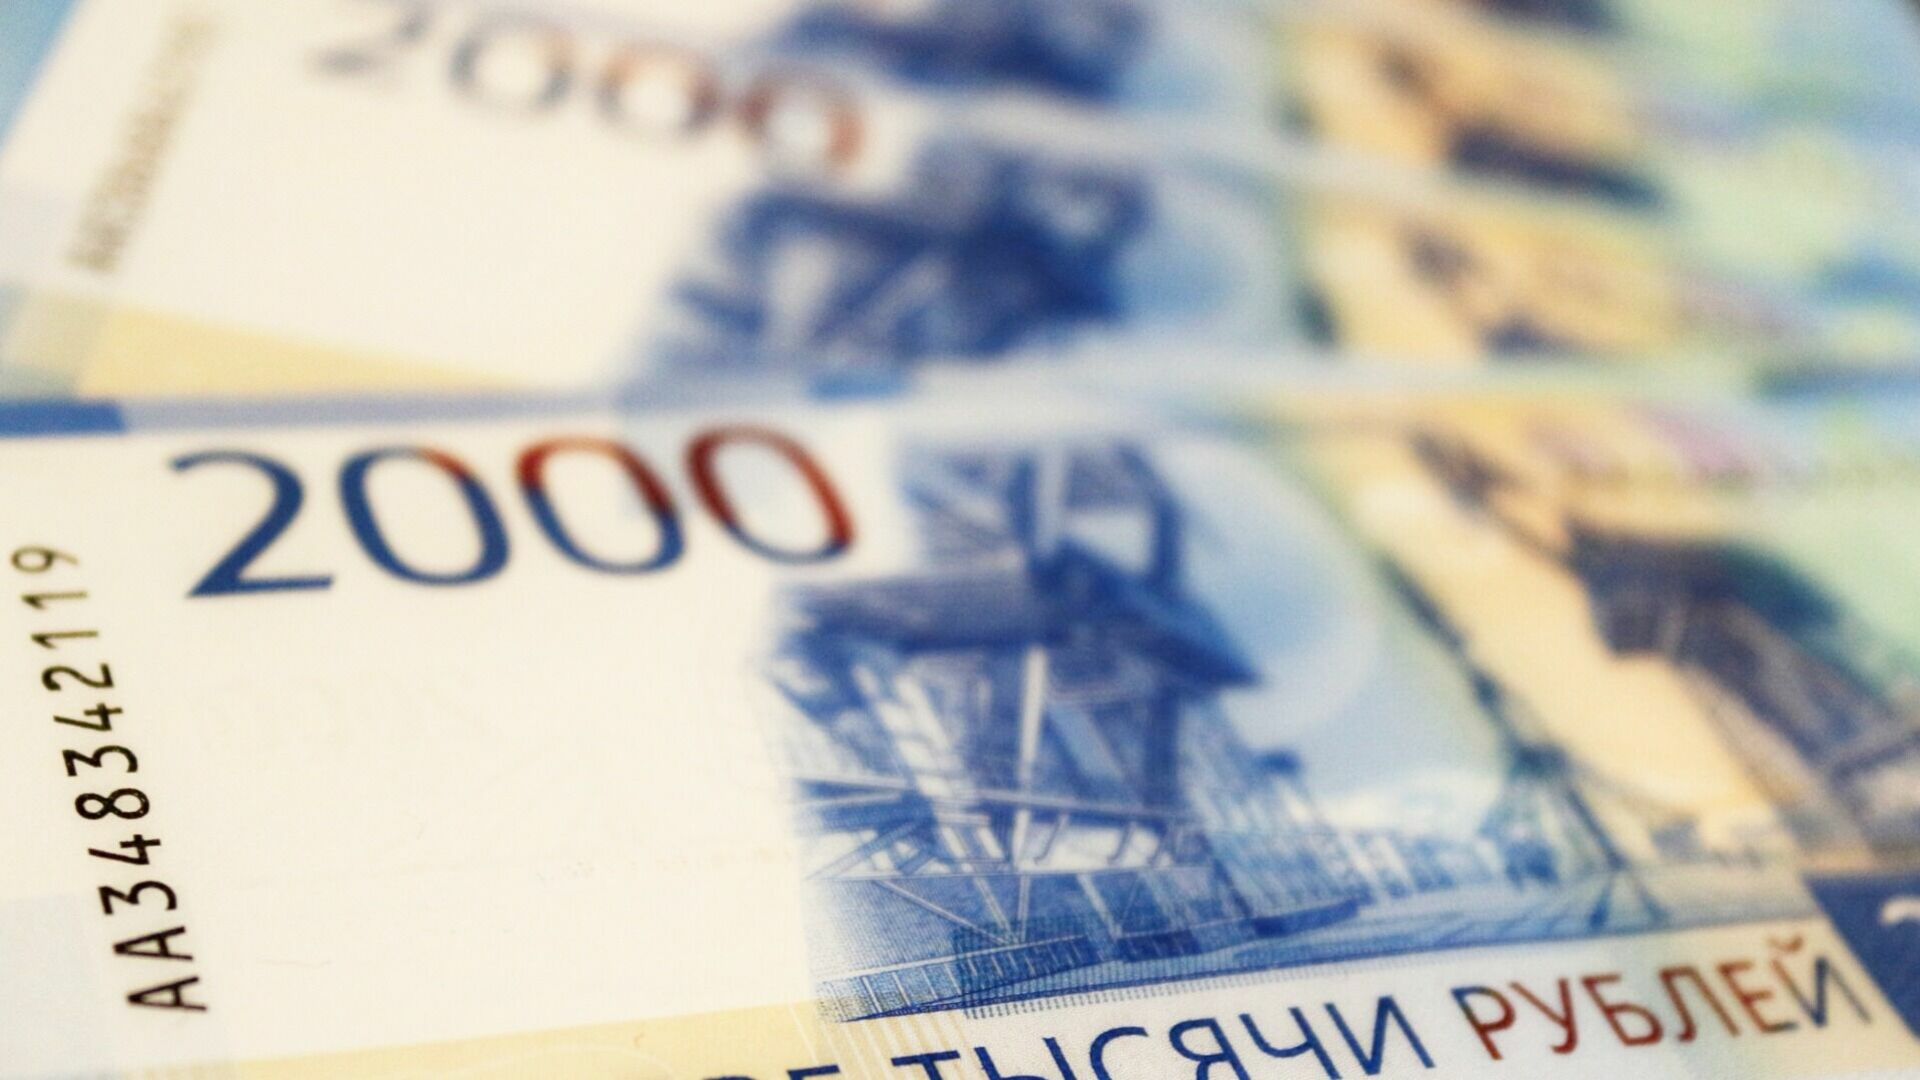 Обновление сайта нижегородского Заксобрания обошлось в 77,5 тысячи рублей